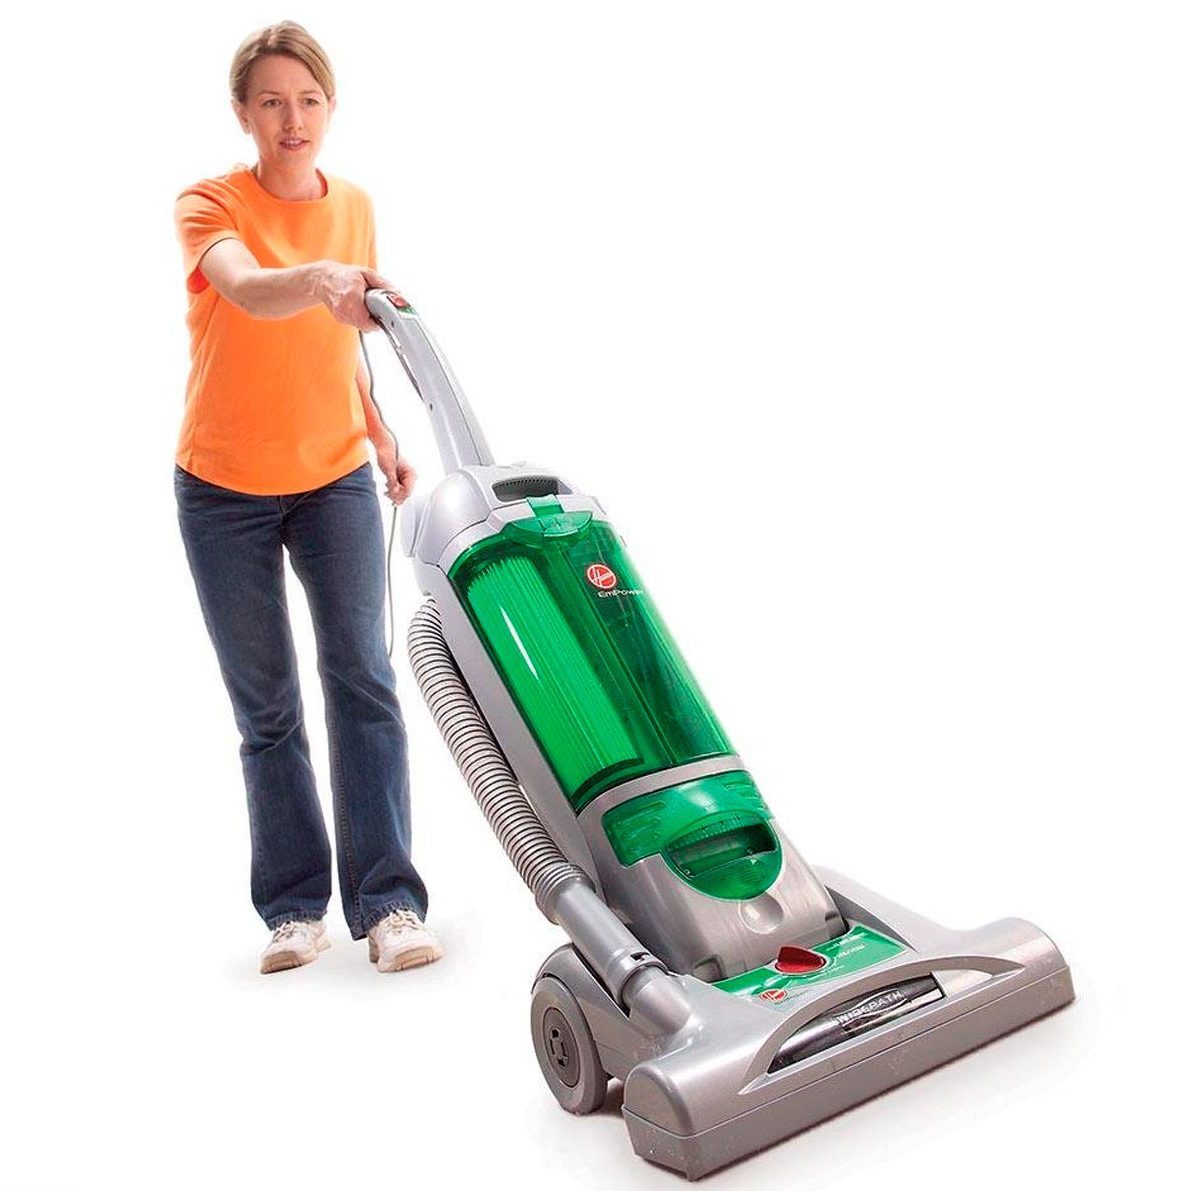 Use the vacuum correctly